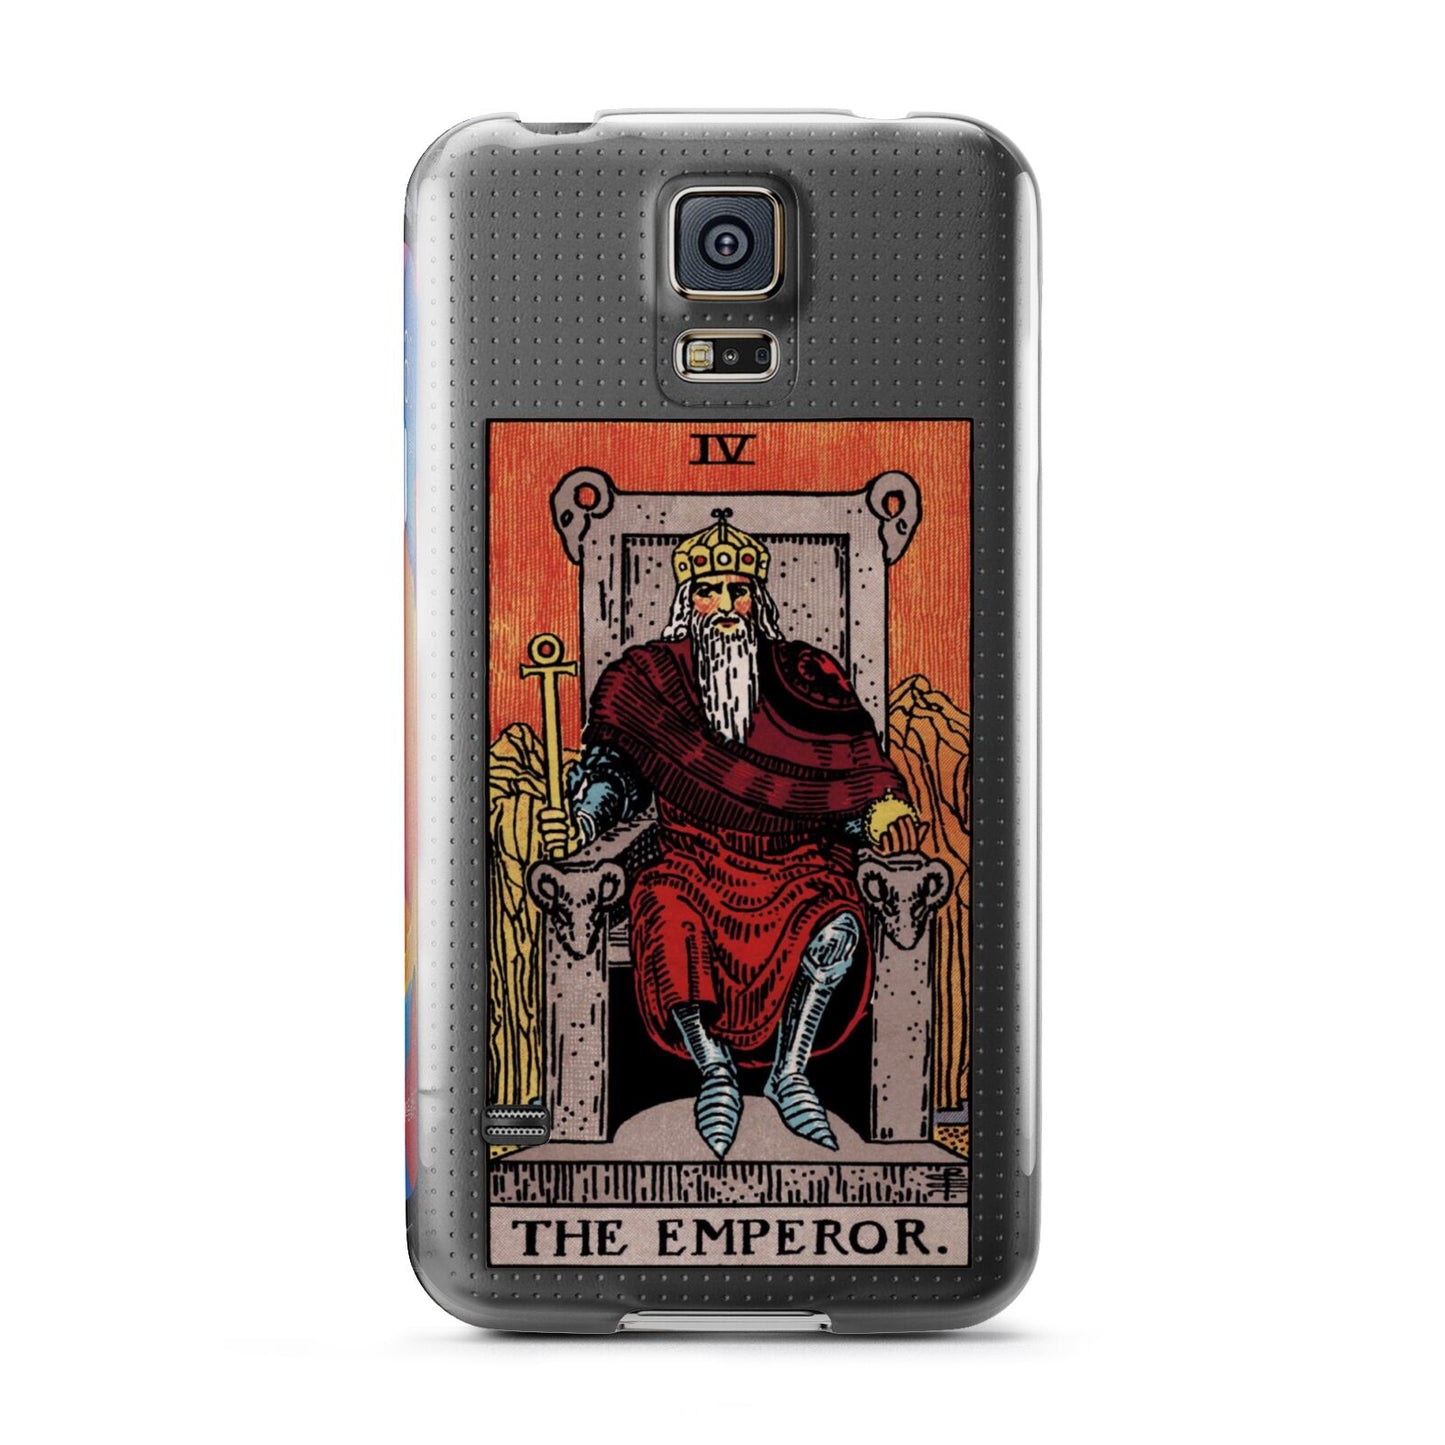 The Emperor Tarot Card Samsung Galaxy S5 Case